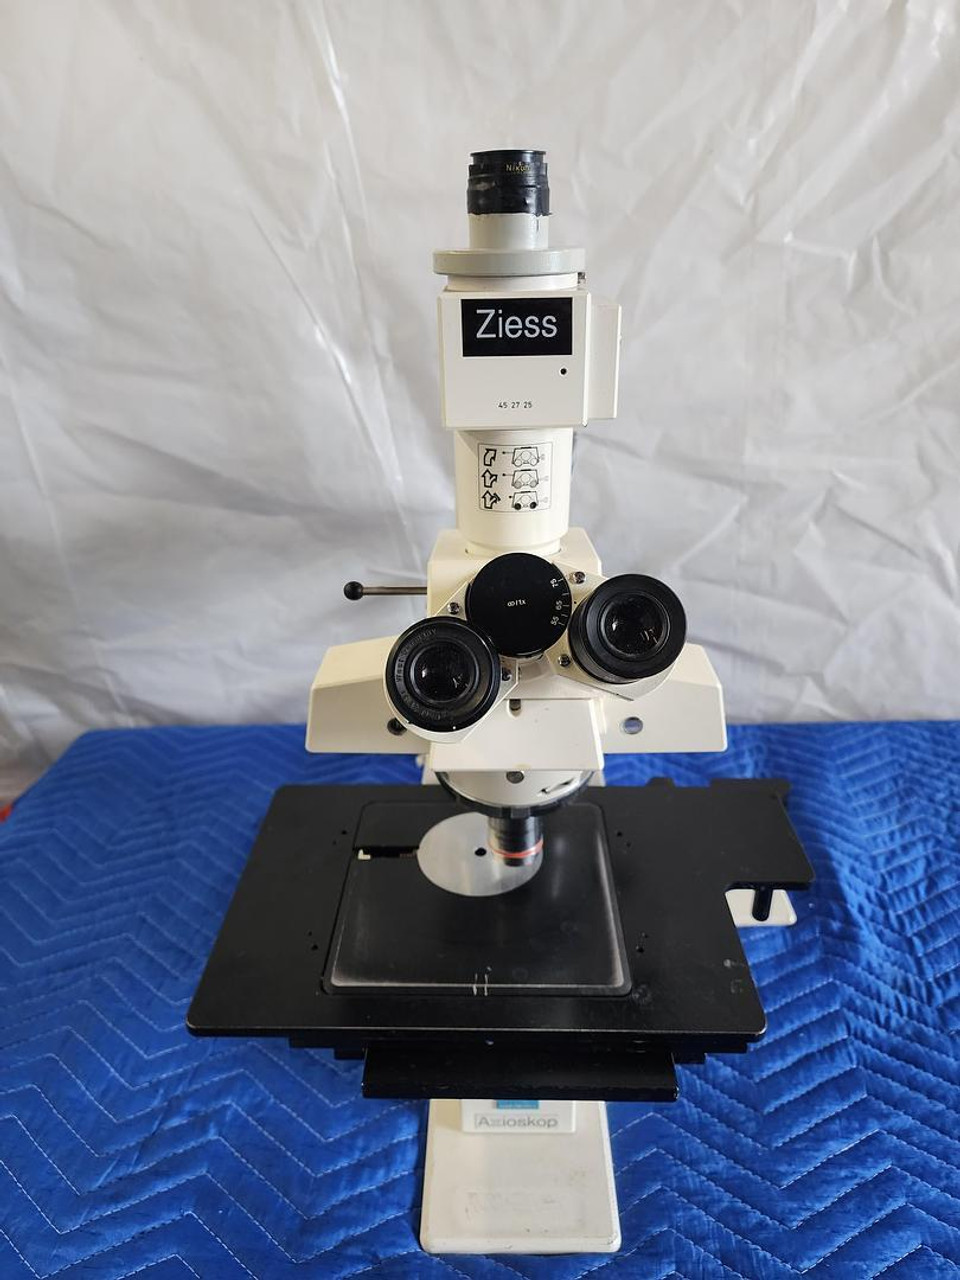 Carl Zeiss Axioskop El Einsatz 45 14 85 Laboratory Microscope